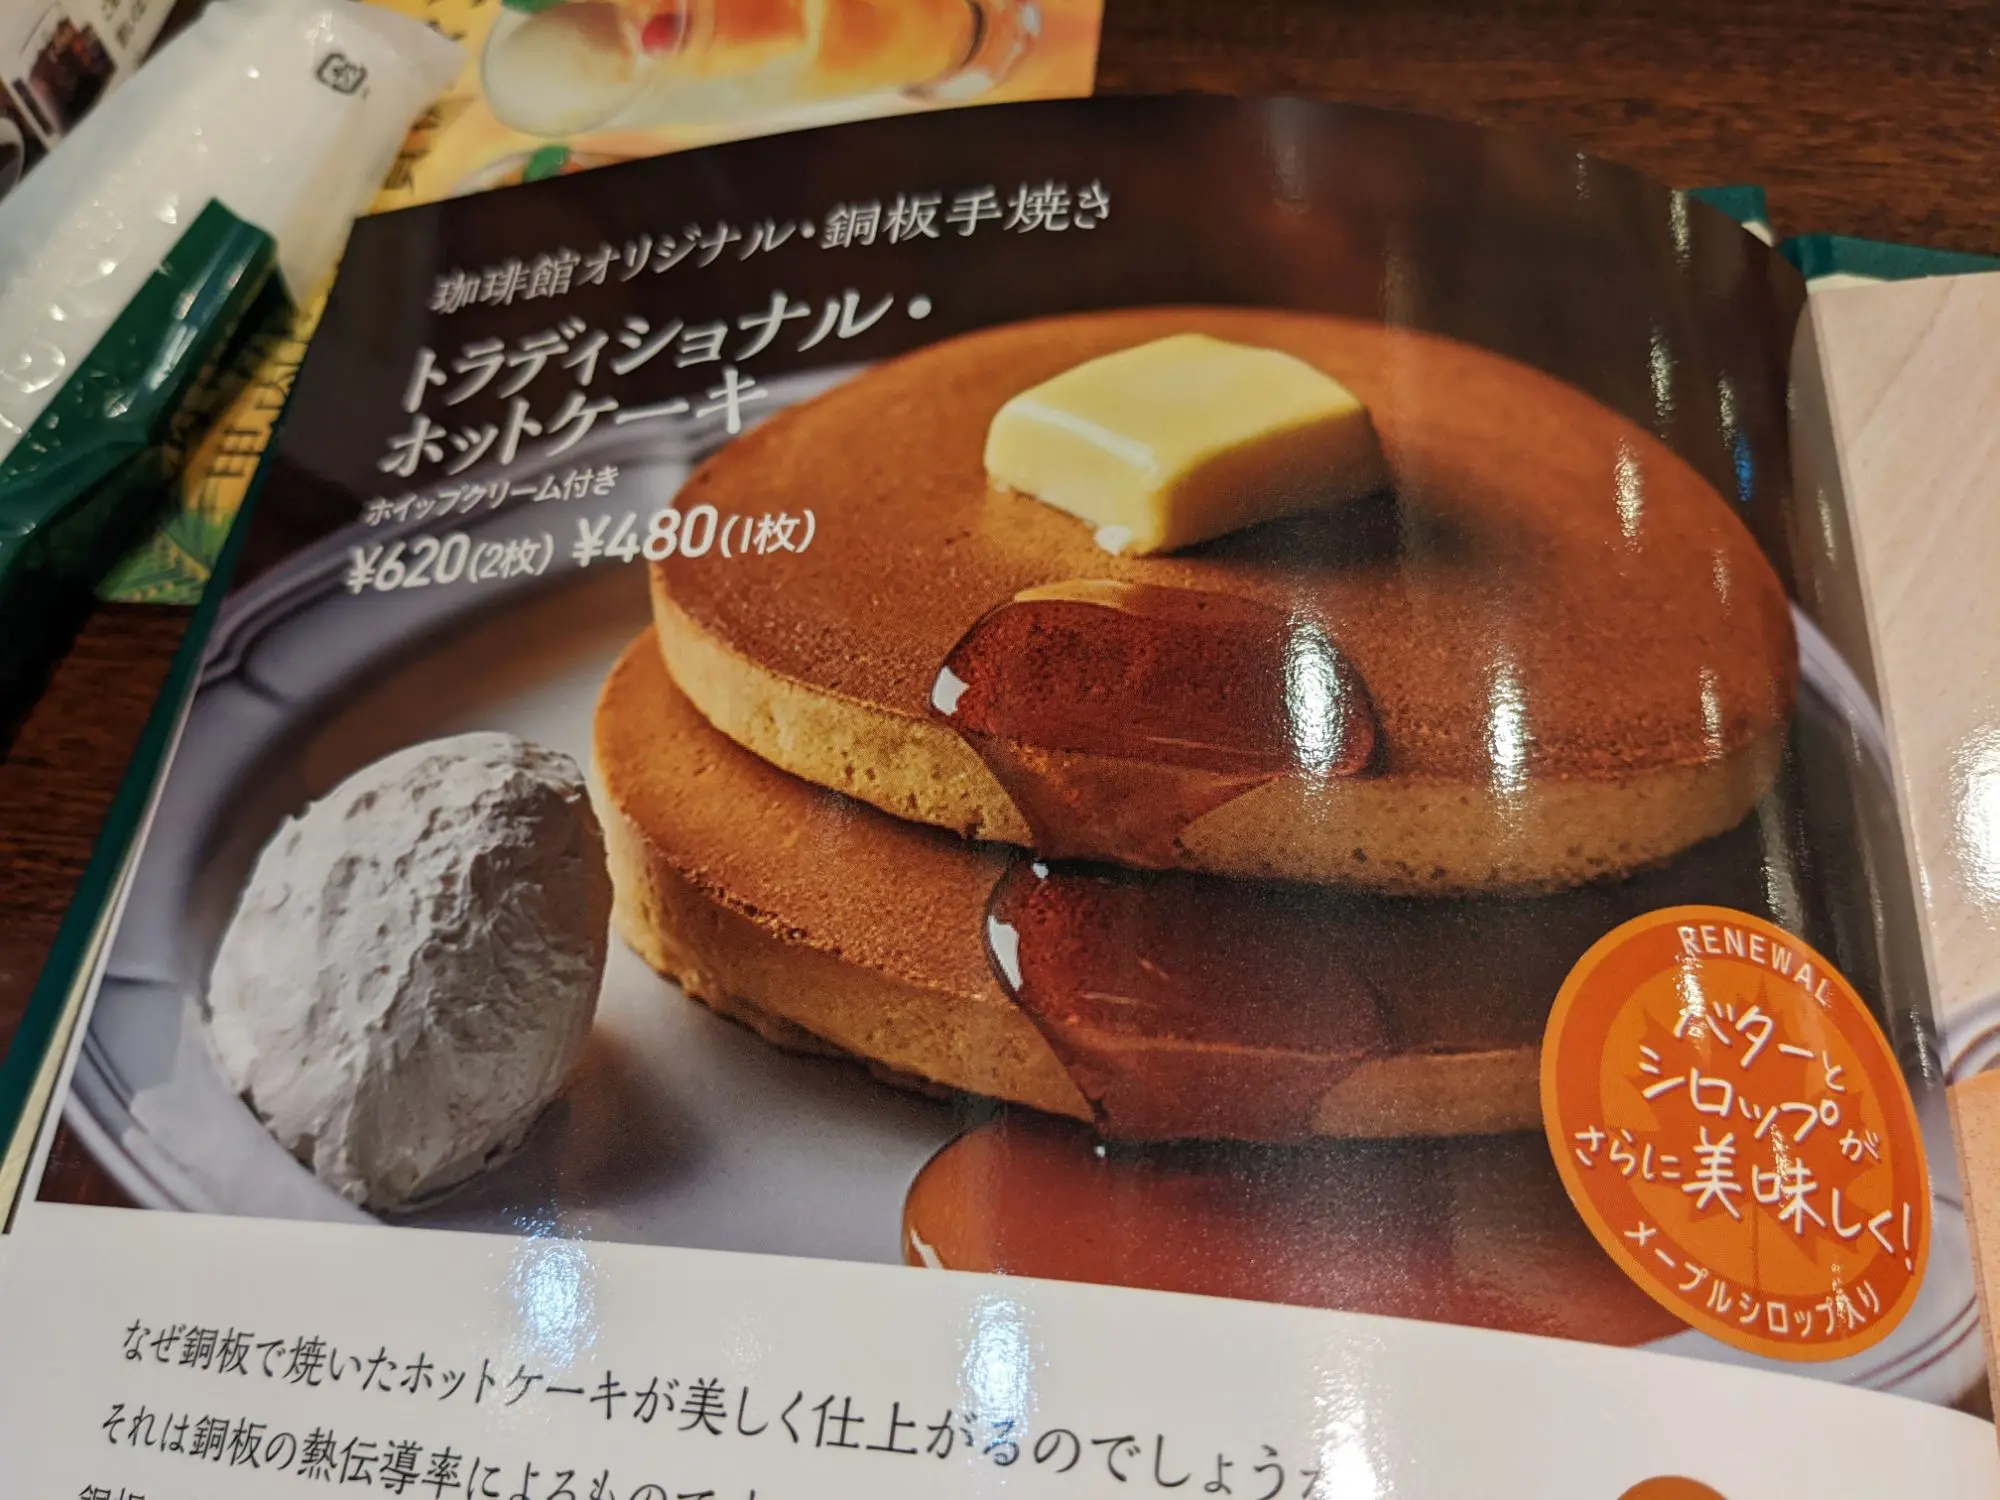 珈琲館のホットケーキとナポリタンをもっと評価してほしい ダッチの渋谷ノマド生活